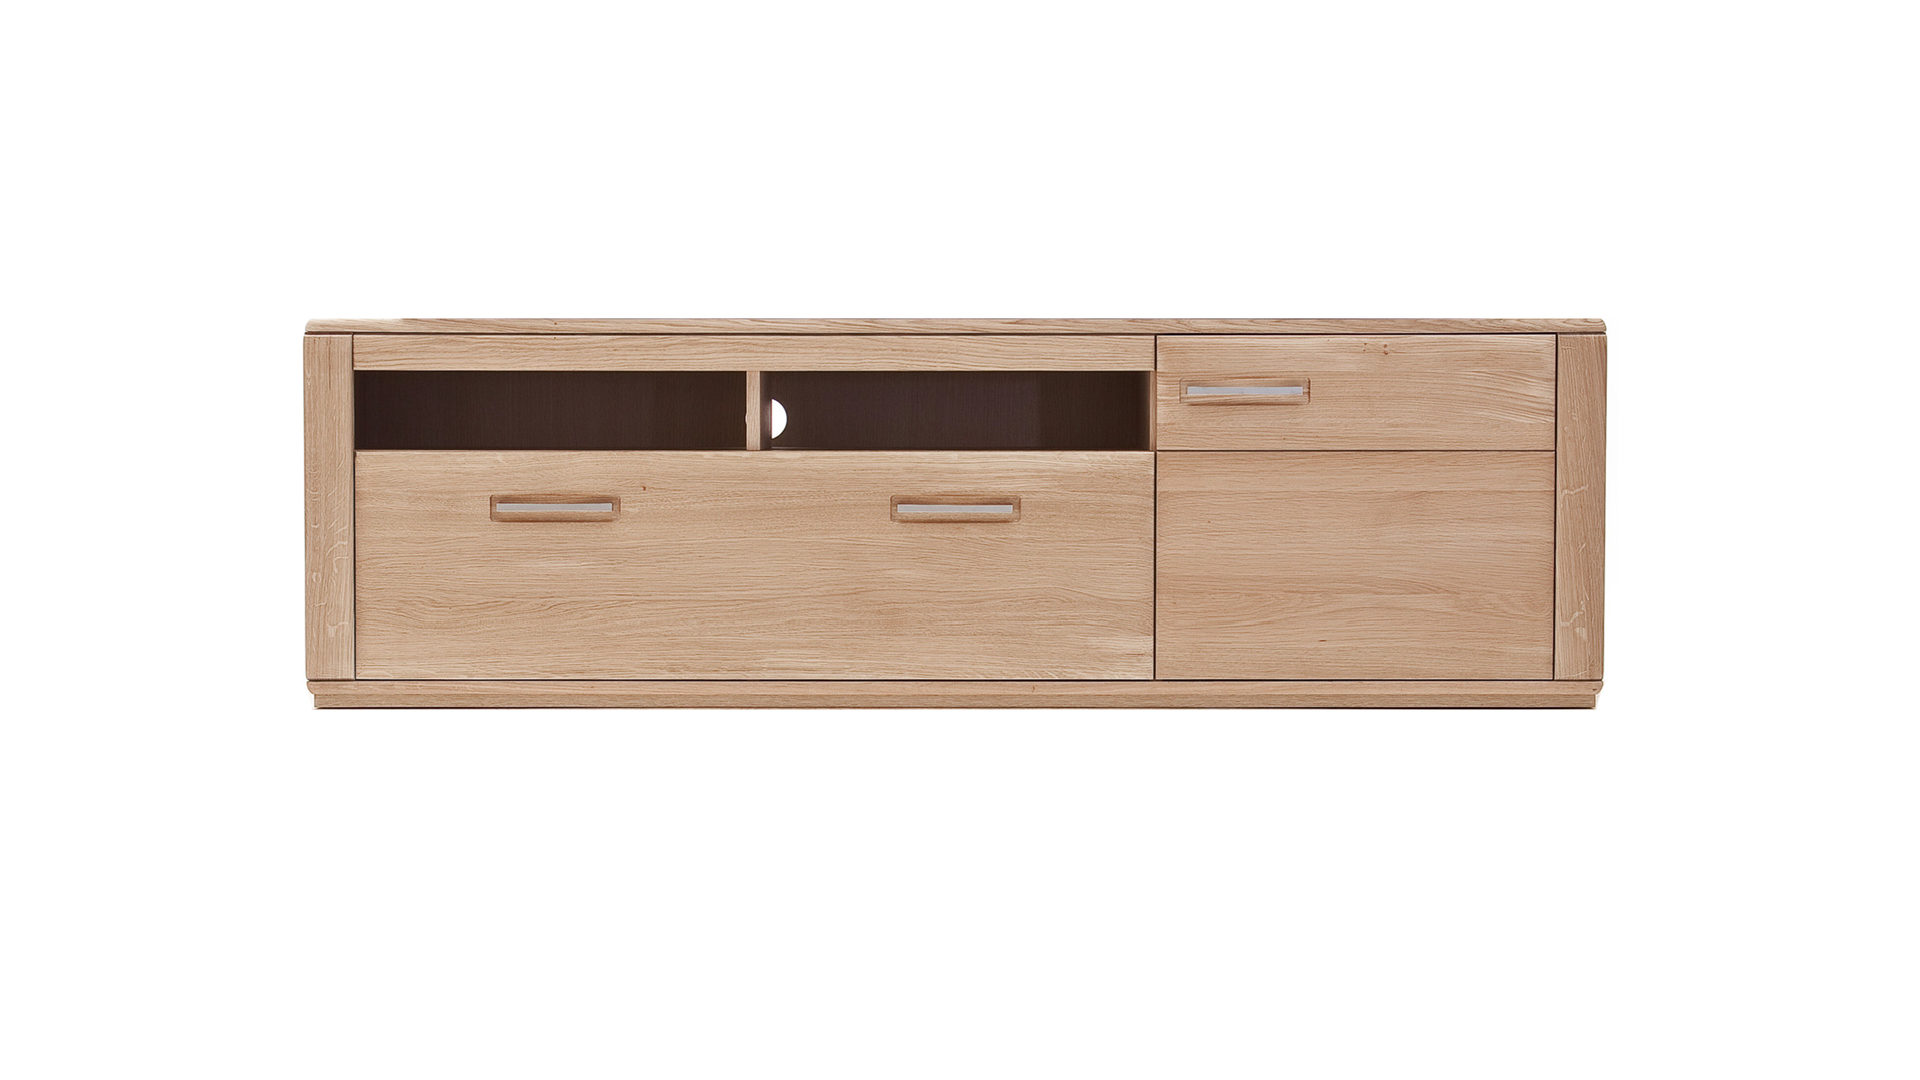 Medienmöbel Mca furniture aus Holz in Holzfarben TV-Element mit Kabelmanagement Bianco geölte Eiche – eine Tür, eine Schublade, zwei Fächer